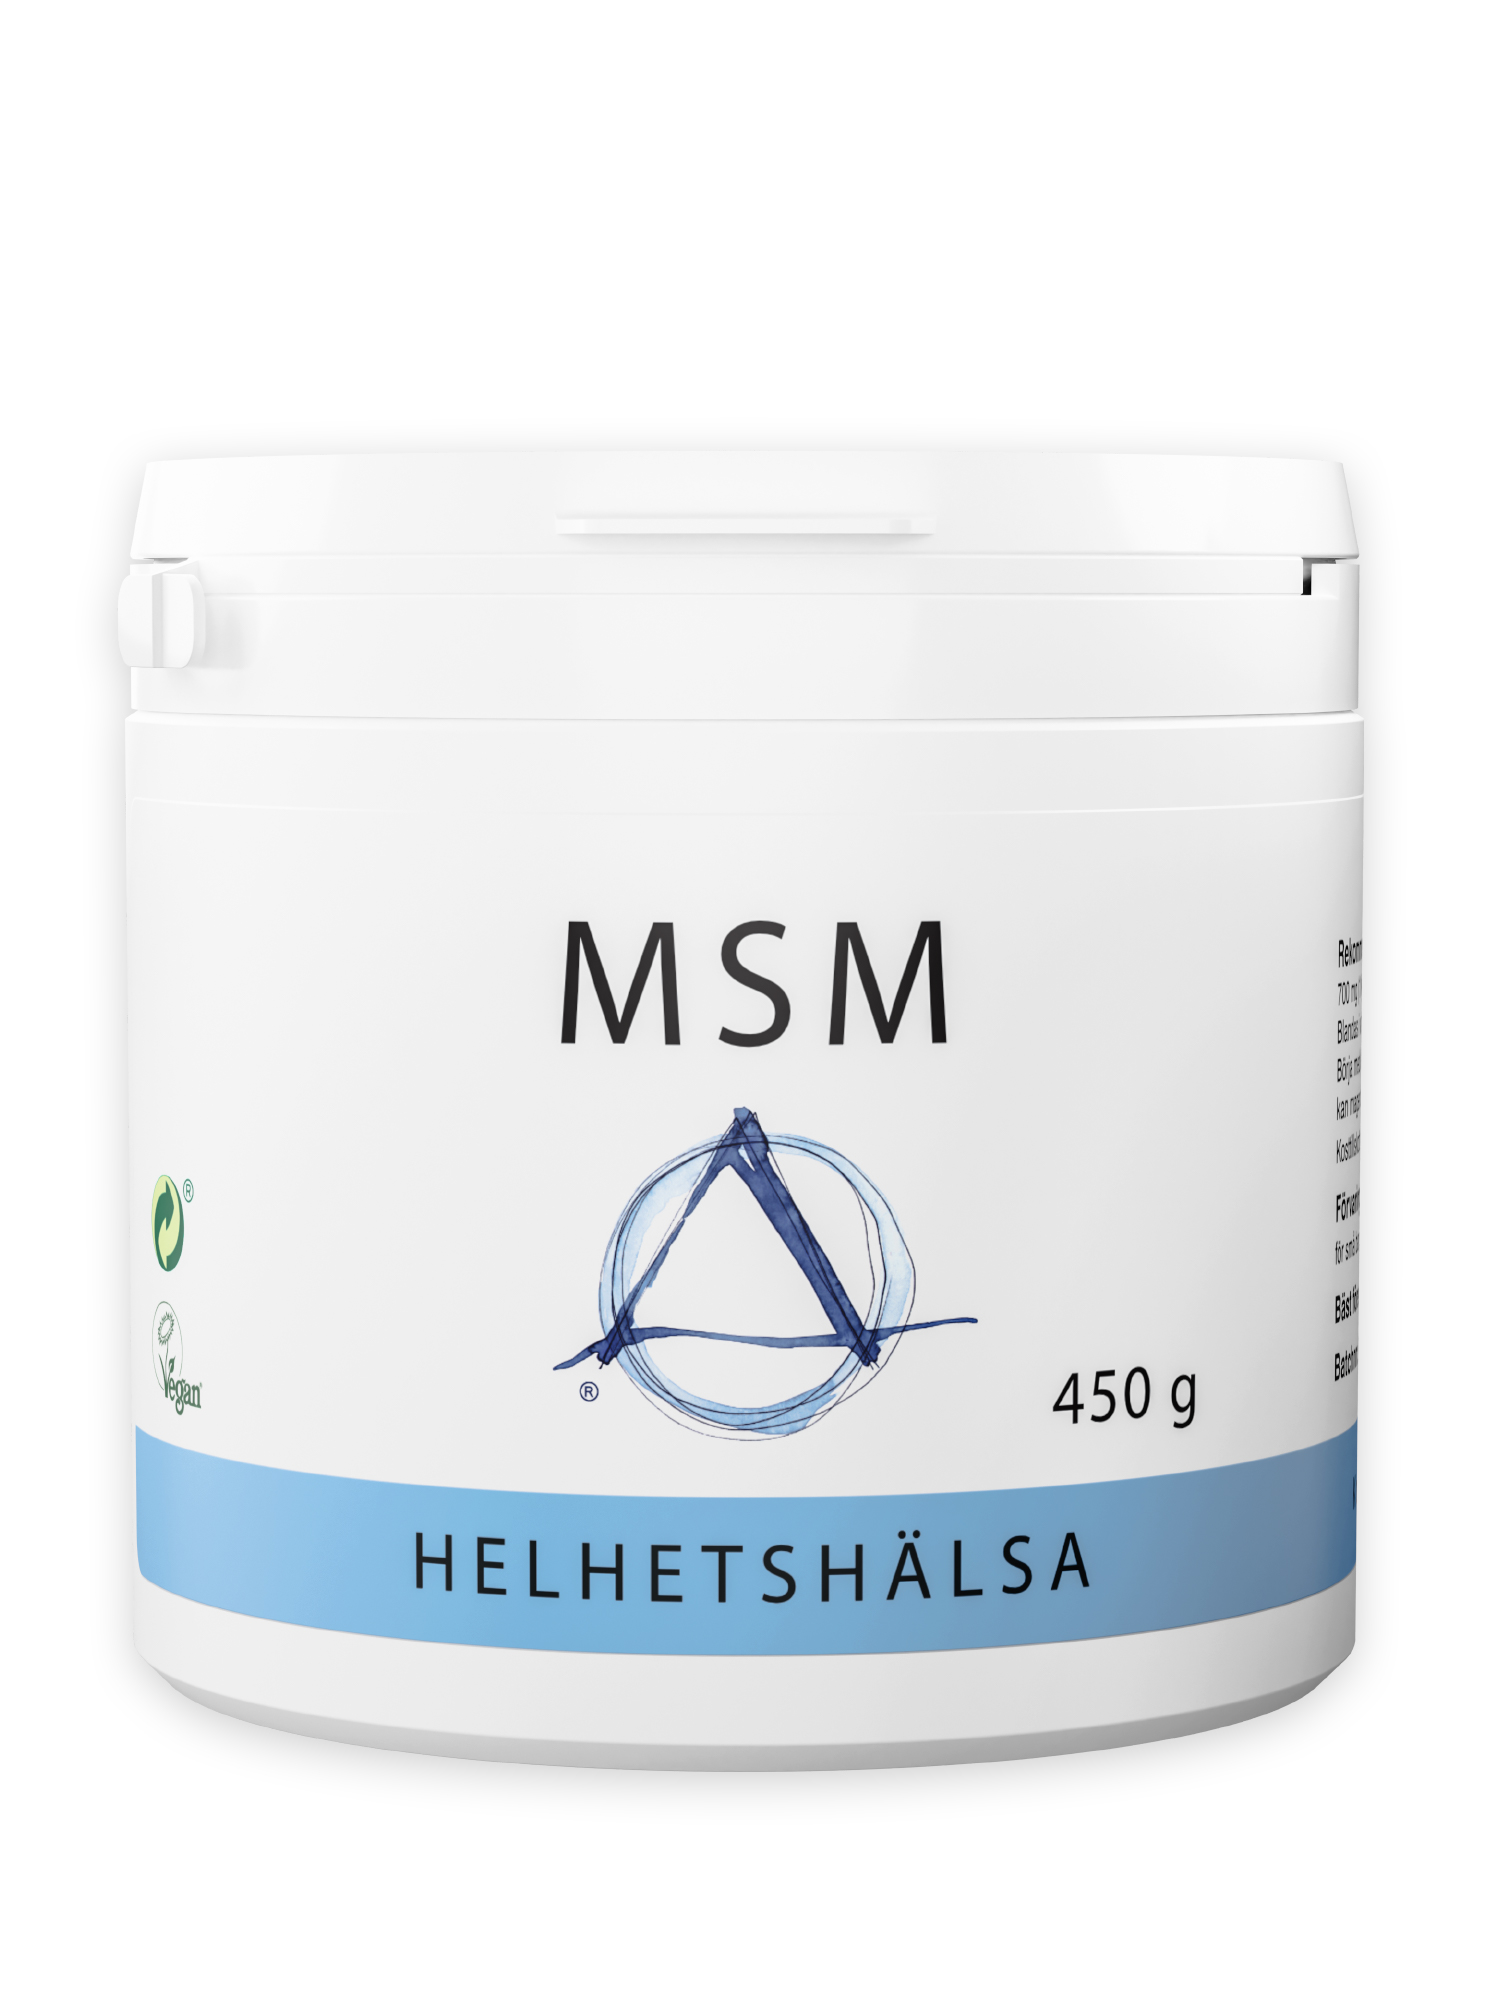 MSM 450 g från Helhetshälsa